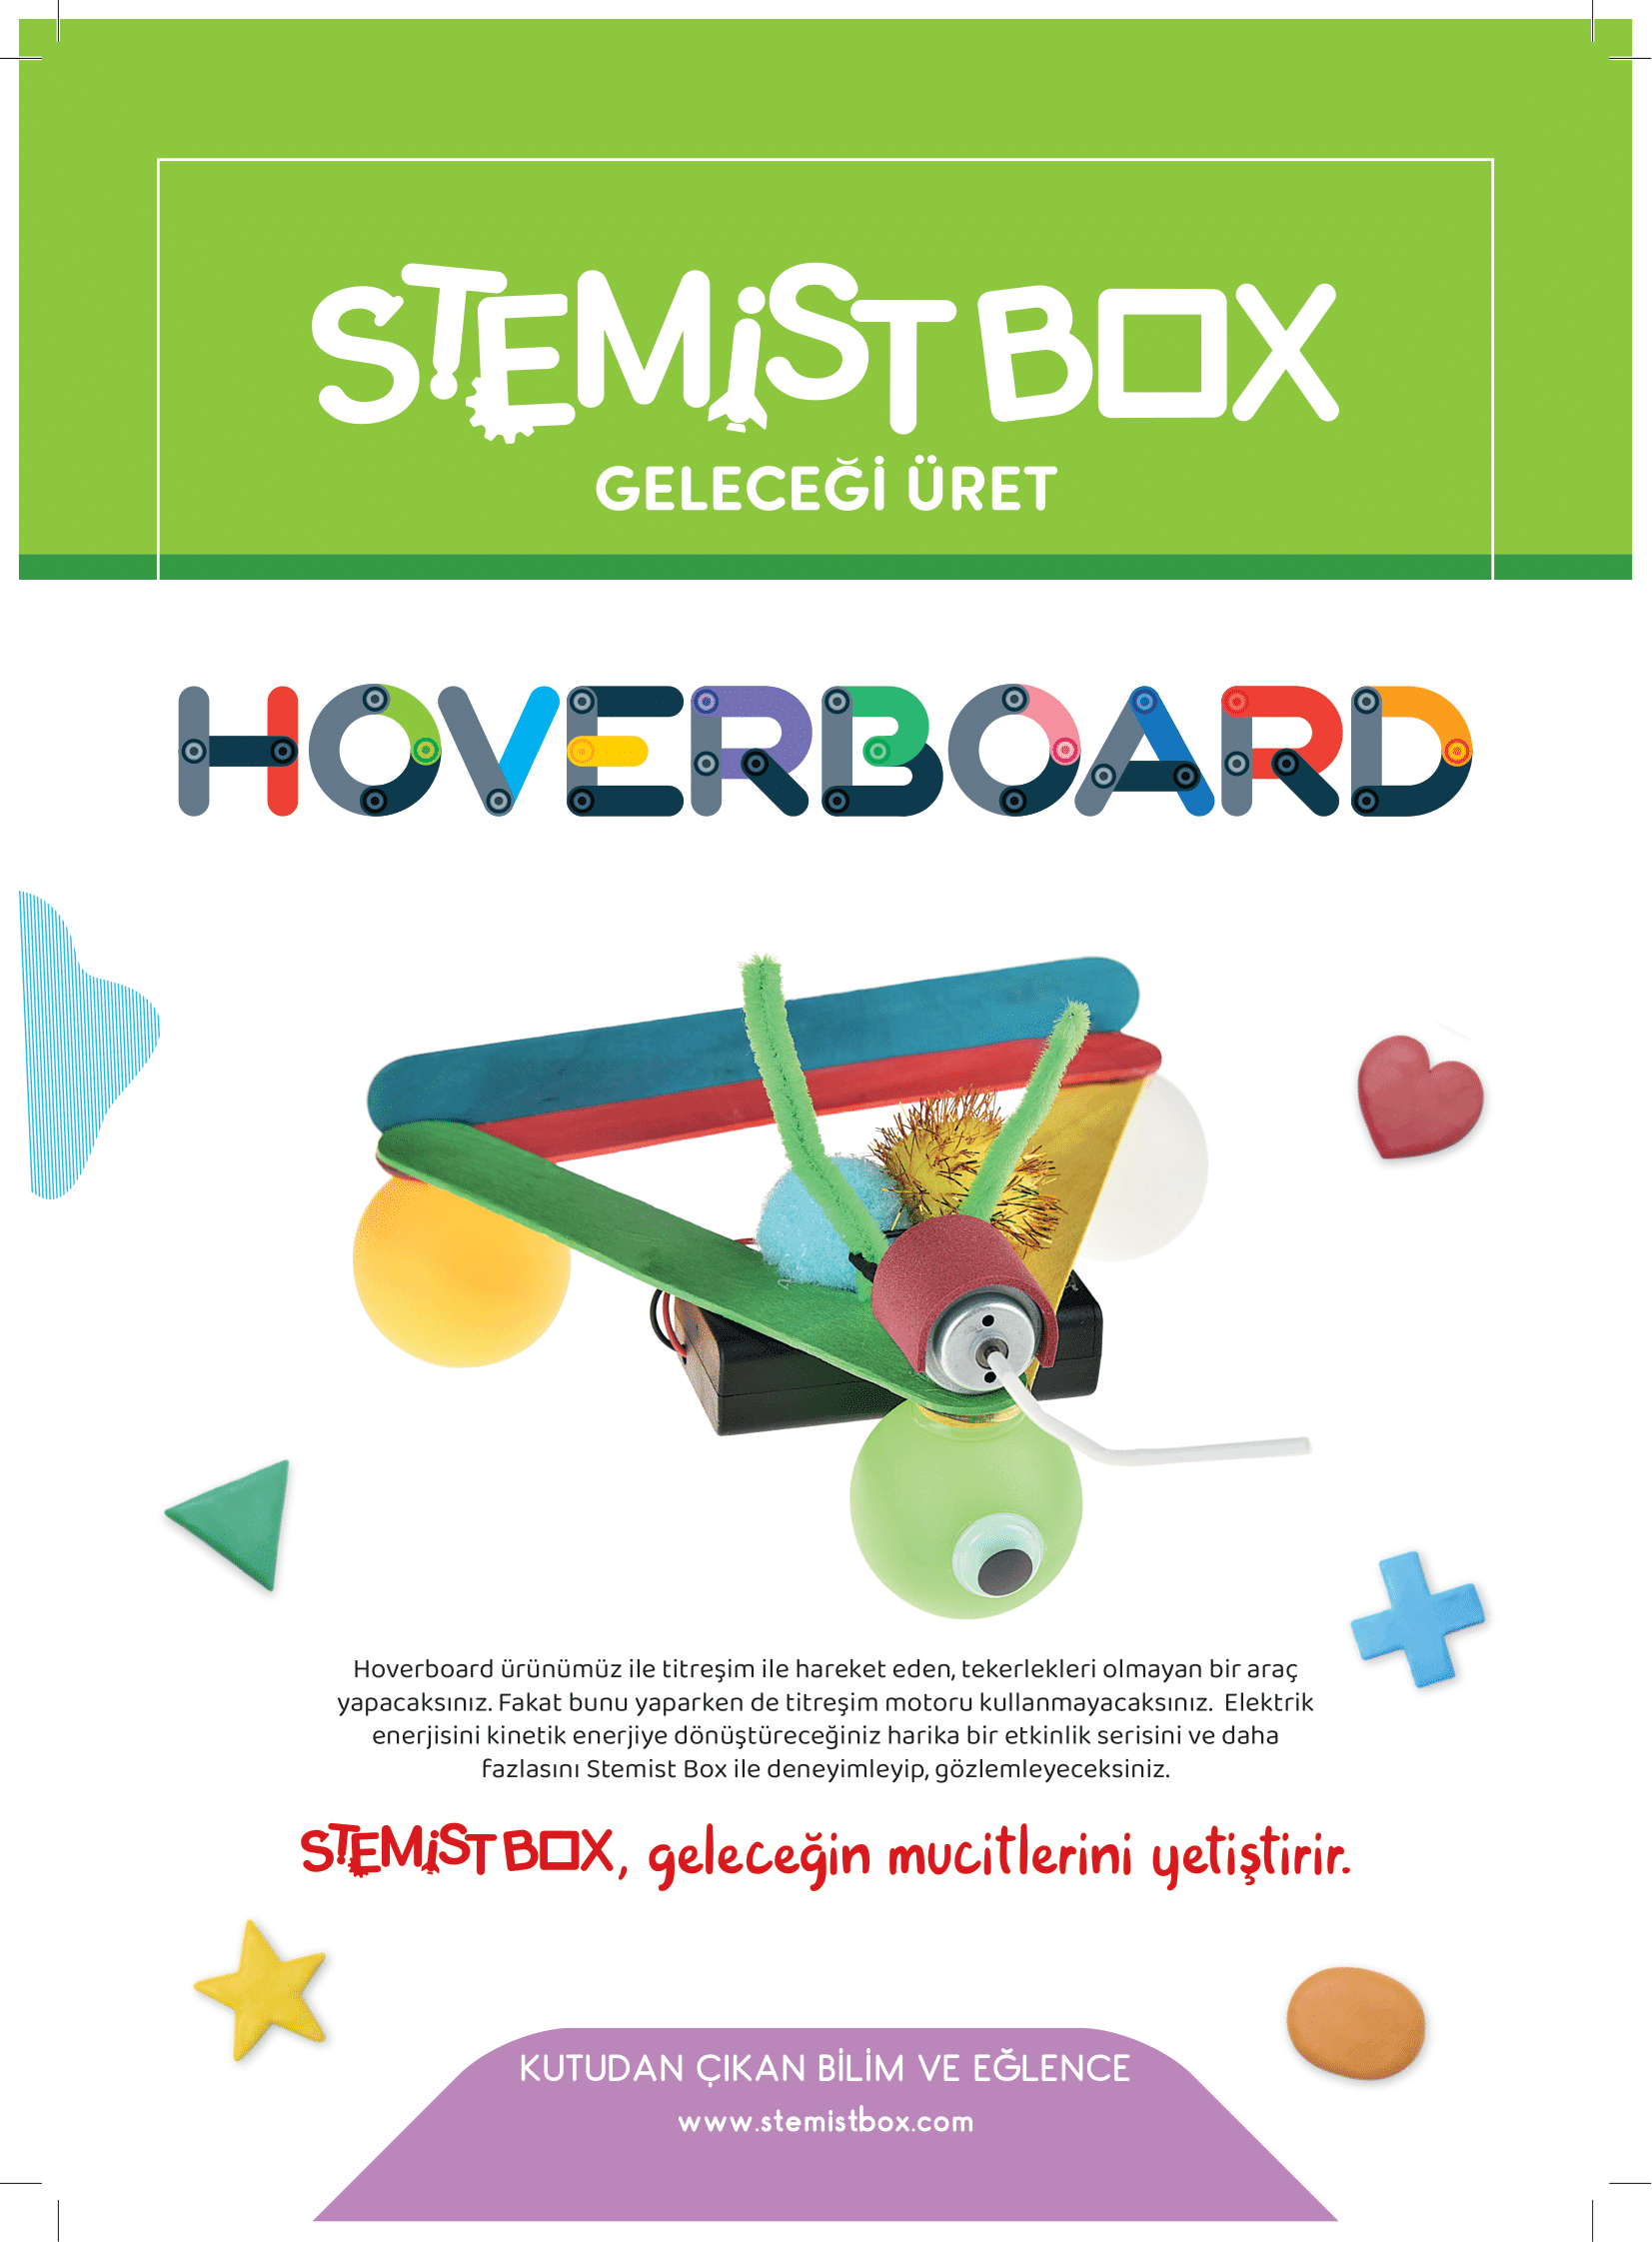 Mini Hoverboard (İlk Robotum)